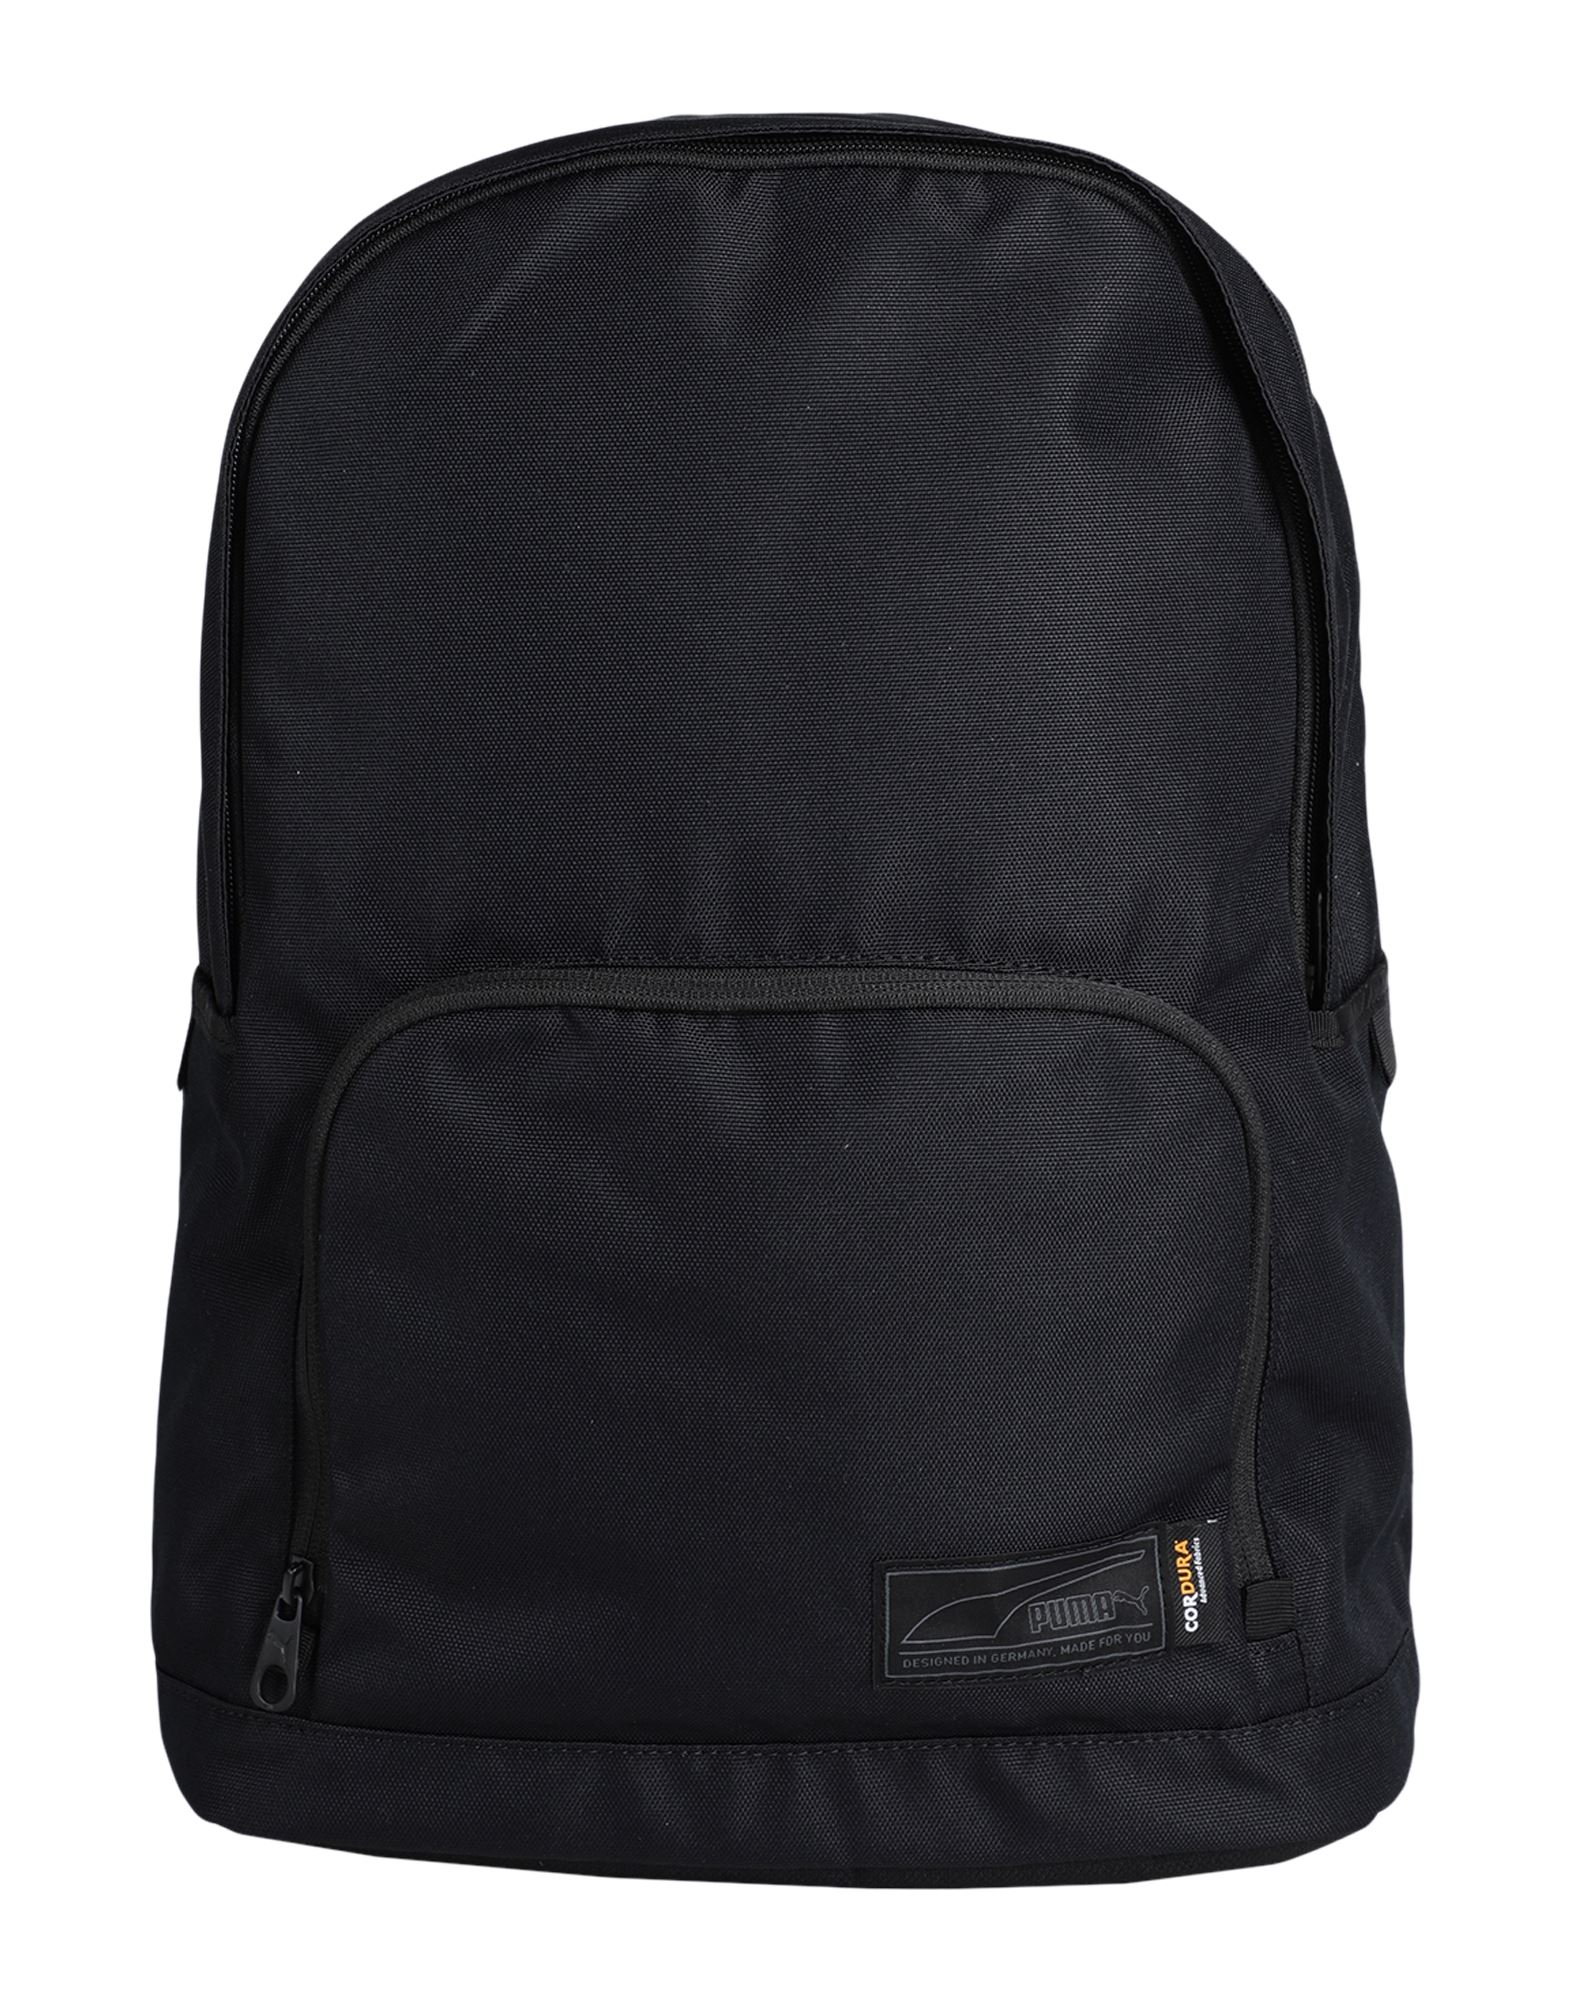 Puma Backpacks In Black